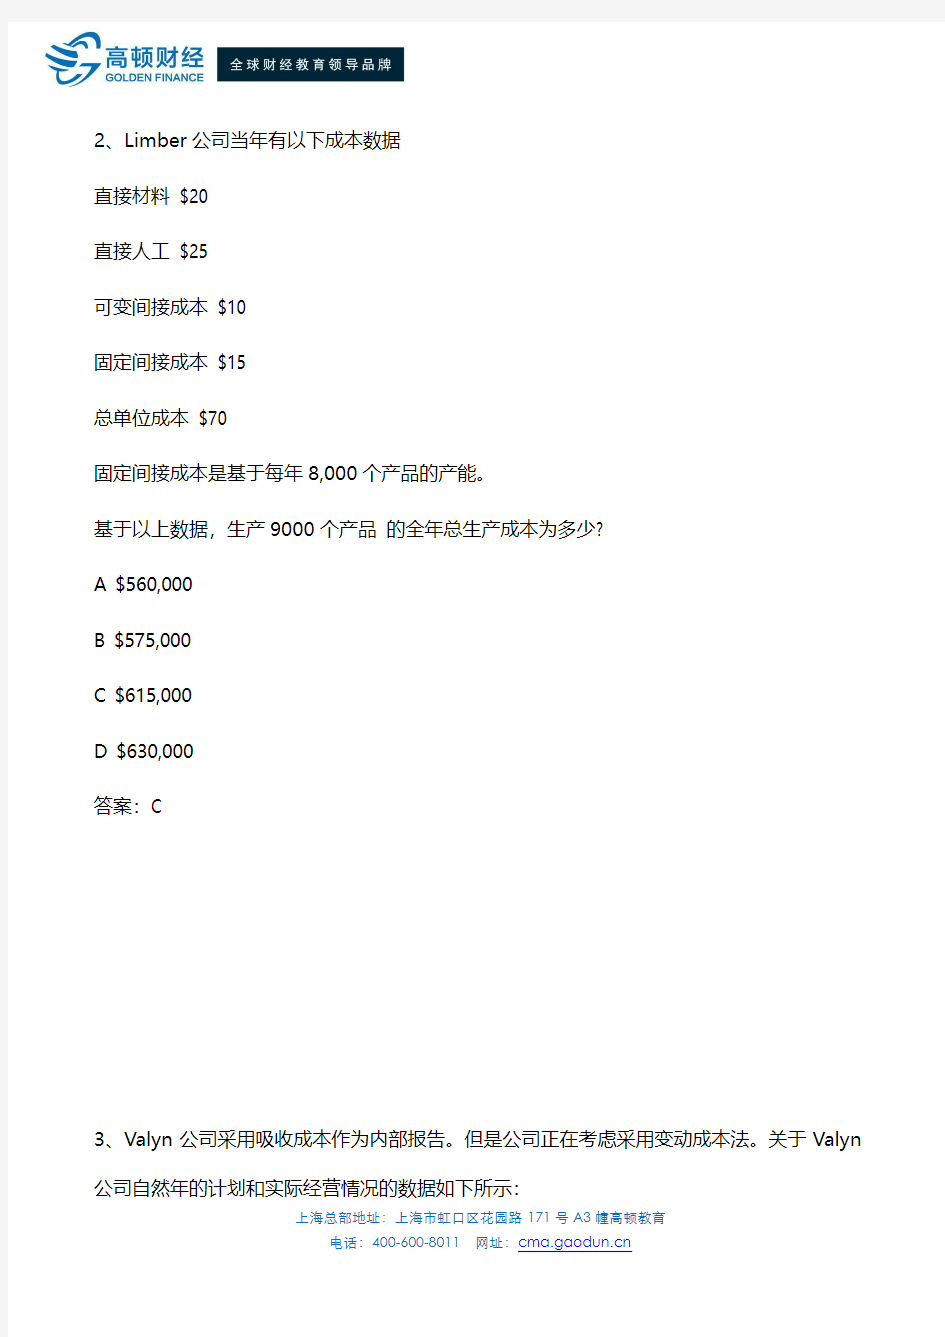 2015年CMA中文考试题目19